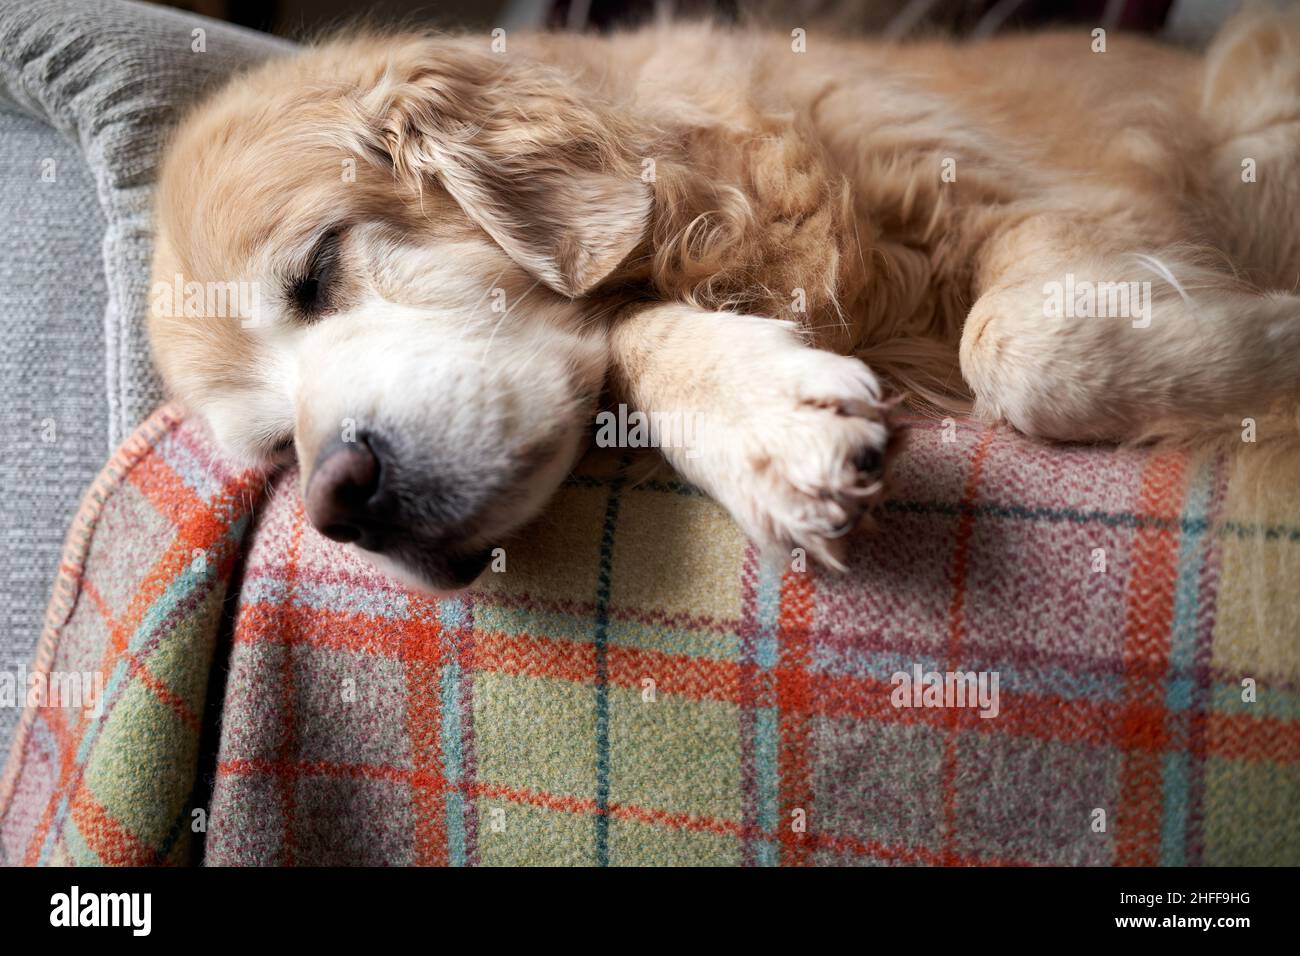 A sleeping golden retriever at home Stock Photo